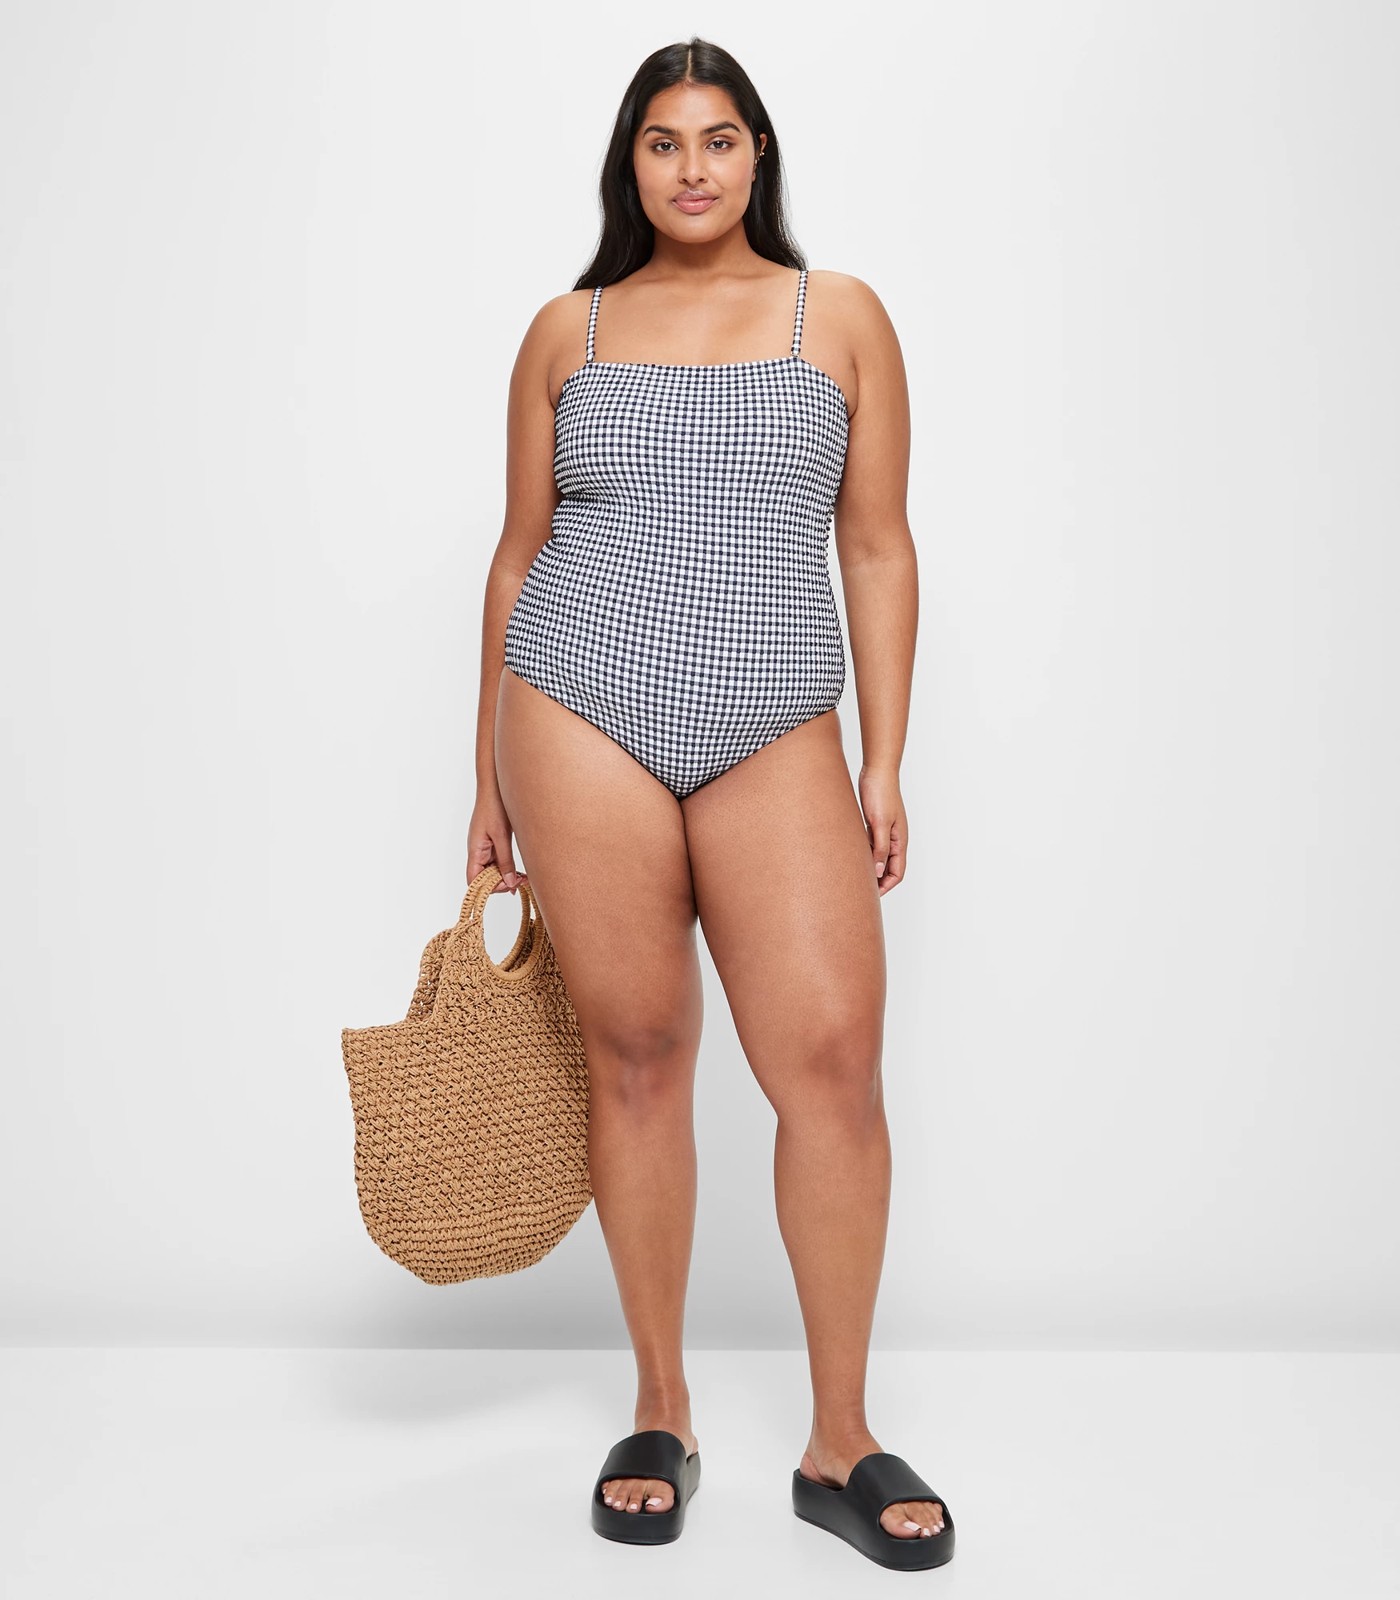 Lucky Brand Seersucker Asymmetrical One Piece - Women's Swimwear Bathing  Suit Swim One Piece in Pacific Coast, Size M - Yahoo Shopping